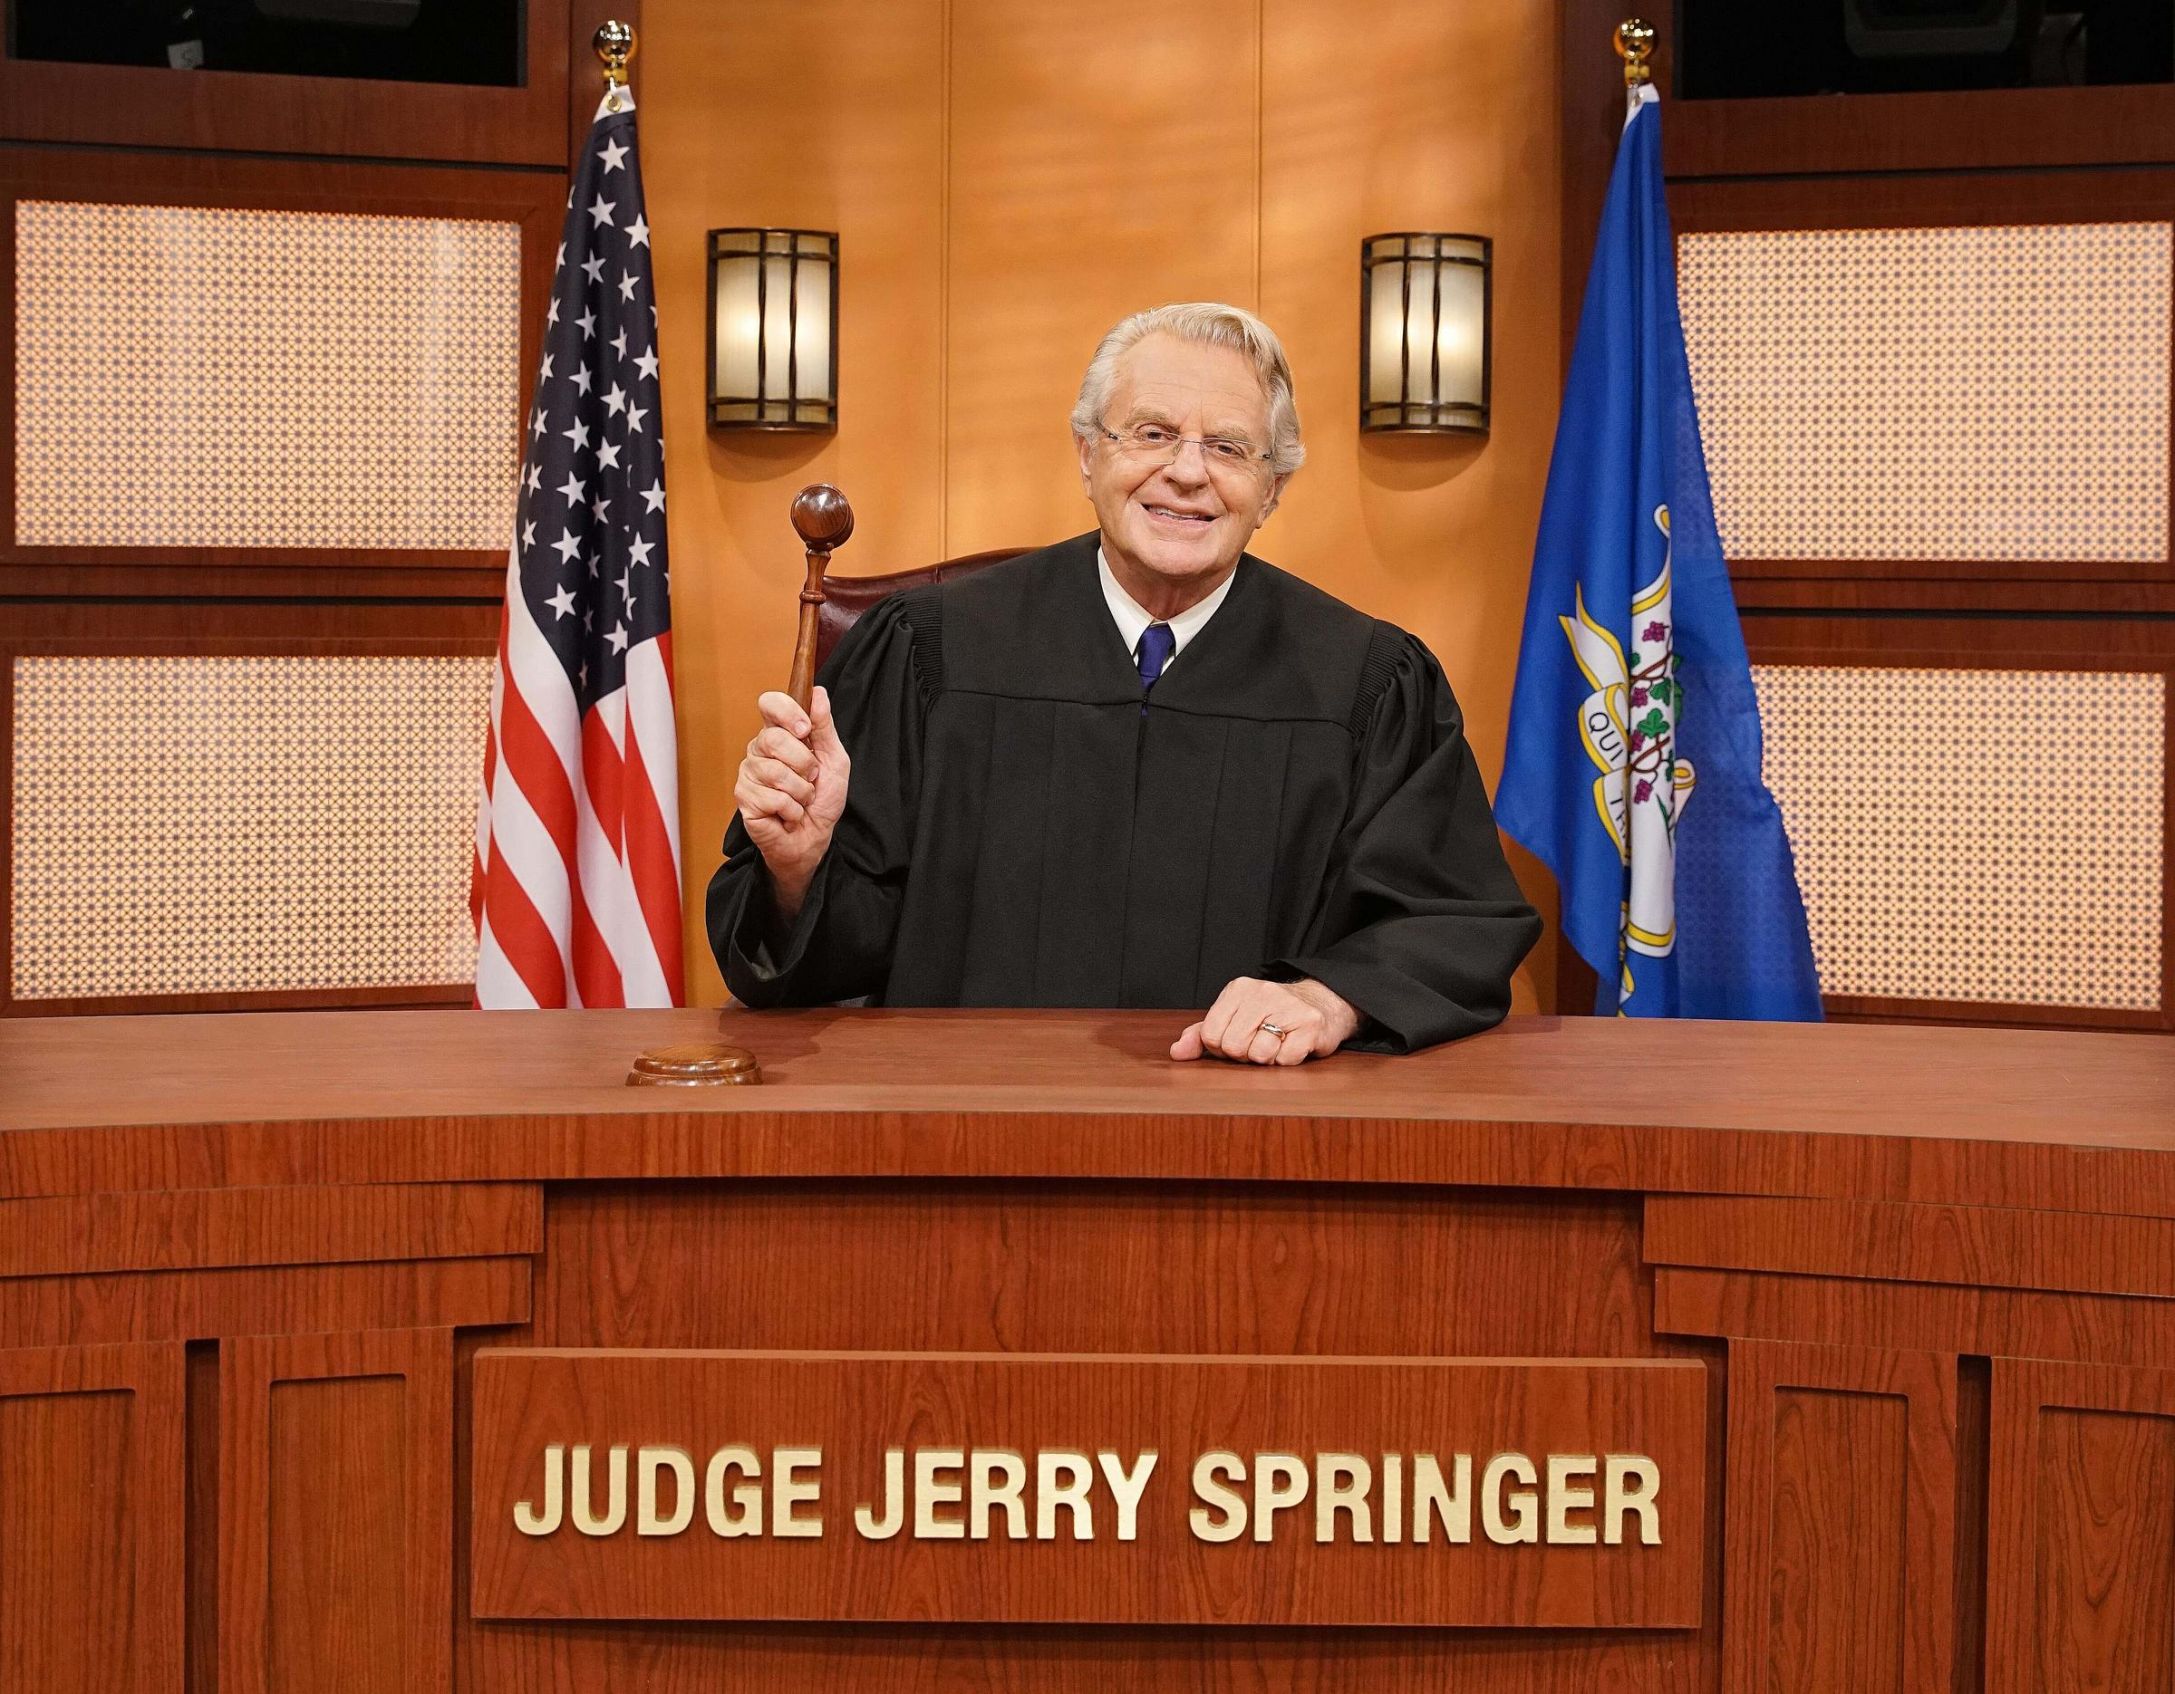 Jerry Springer judge. 